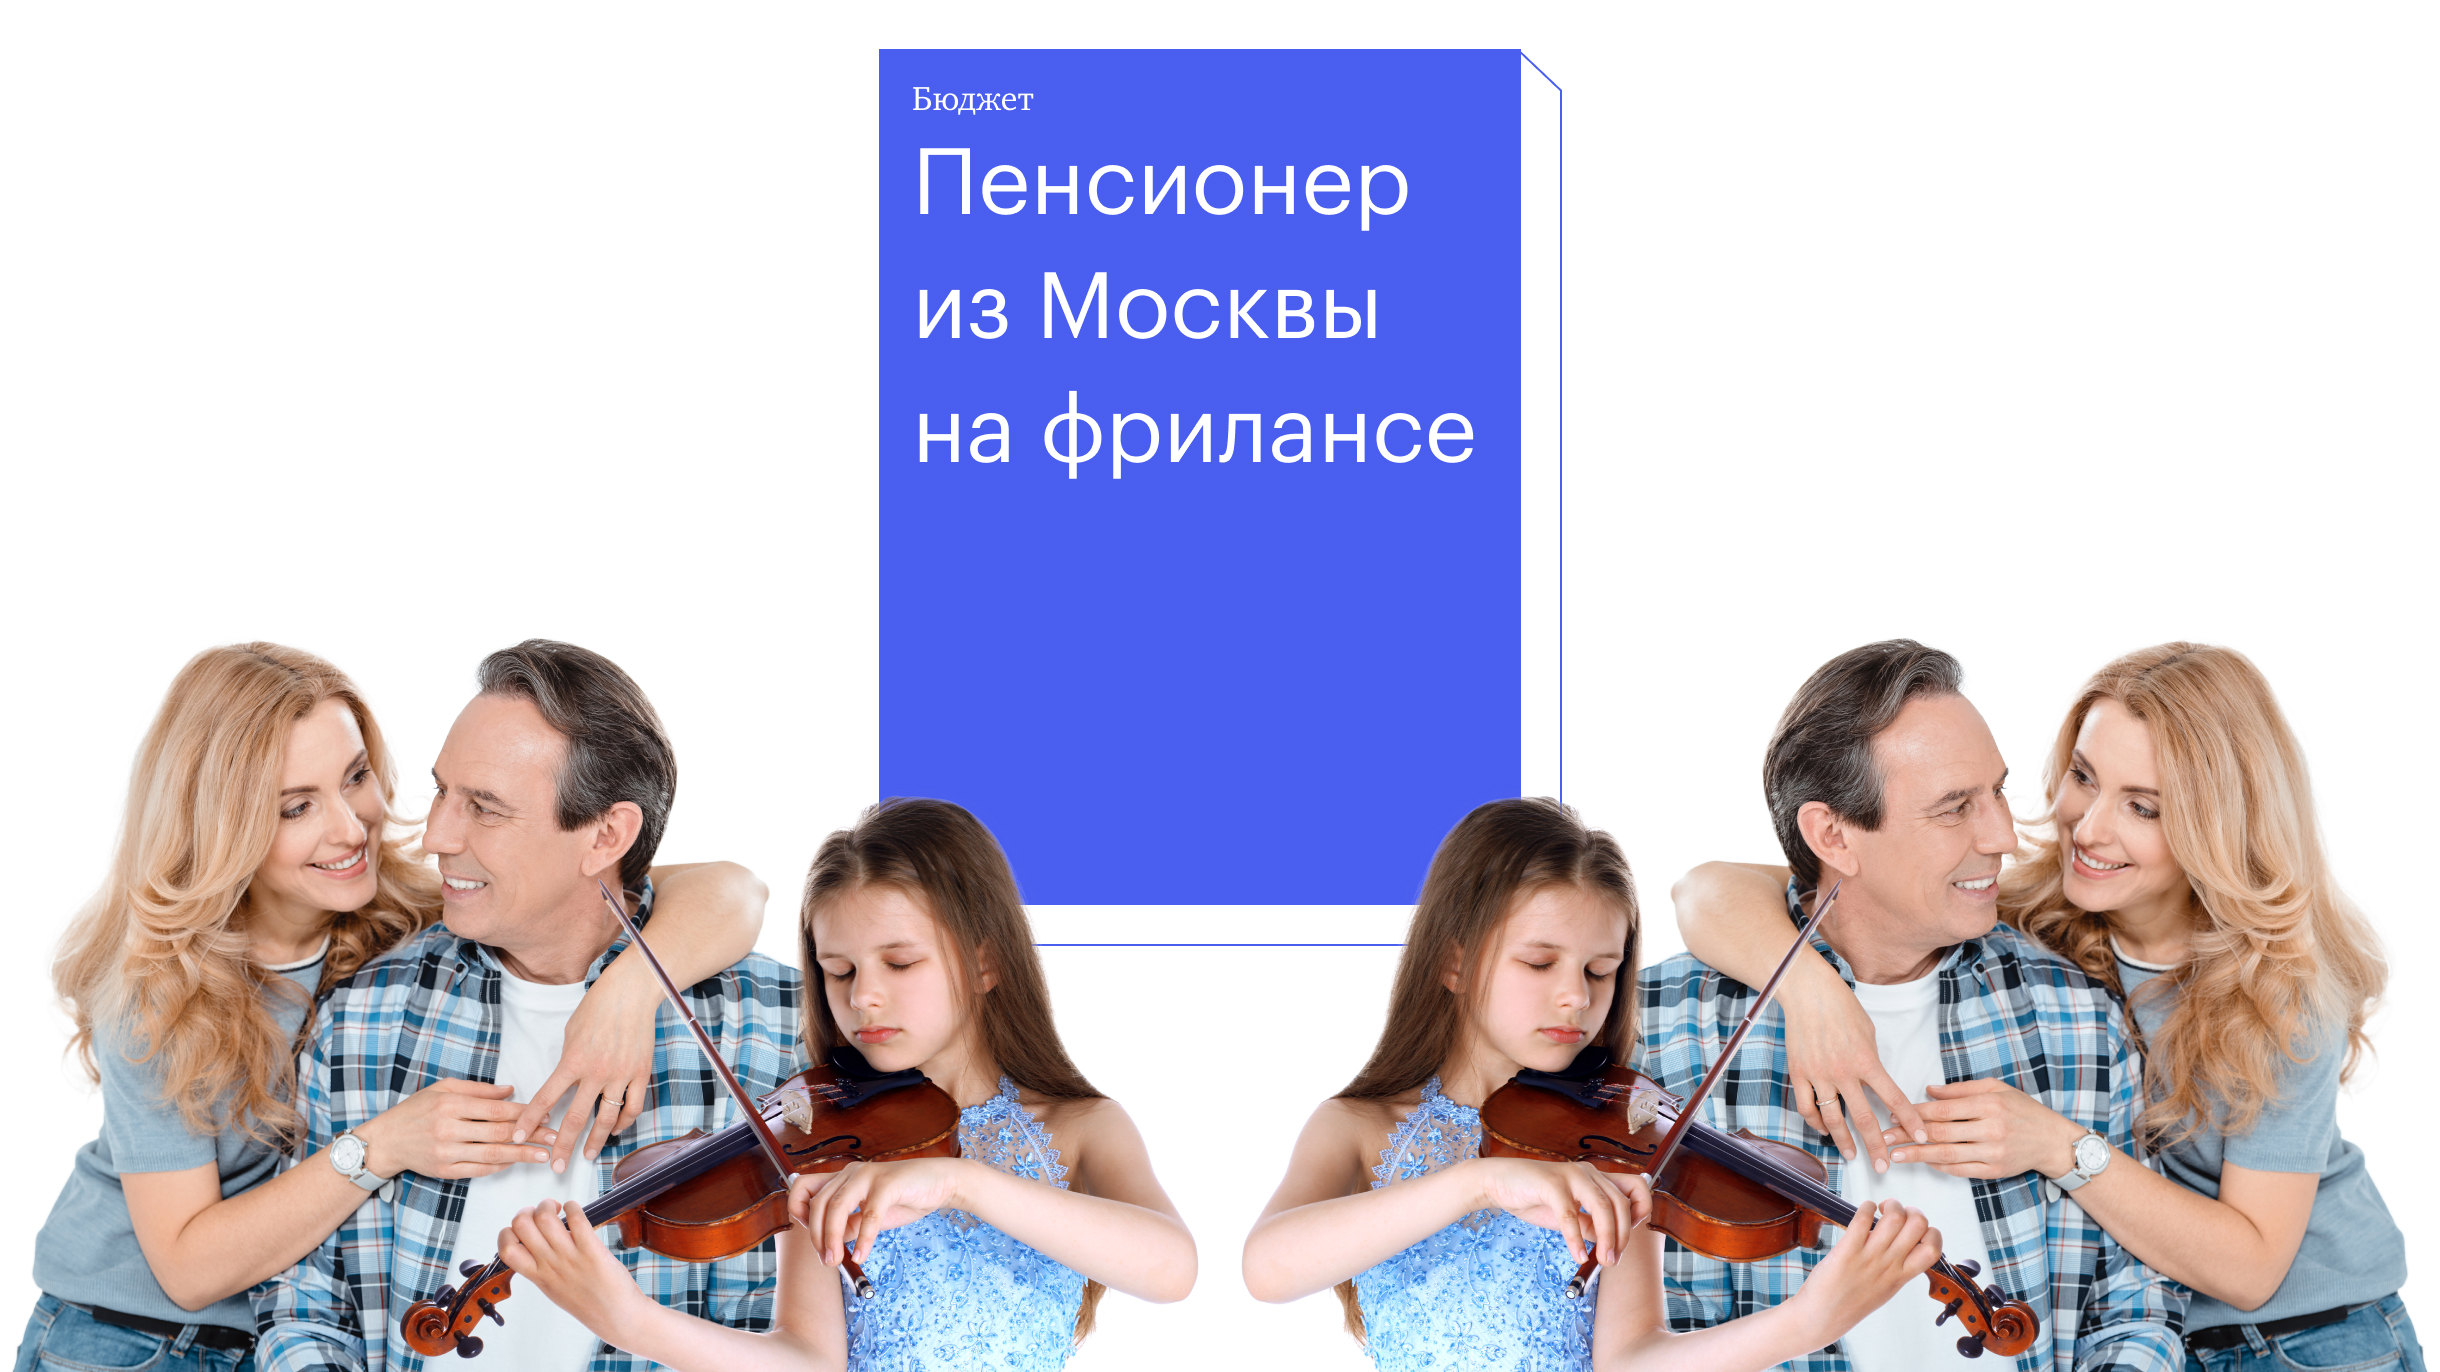 Как ведет семейный бюджет пенсионер из Москвы, который с 90-х работает на фрилансе